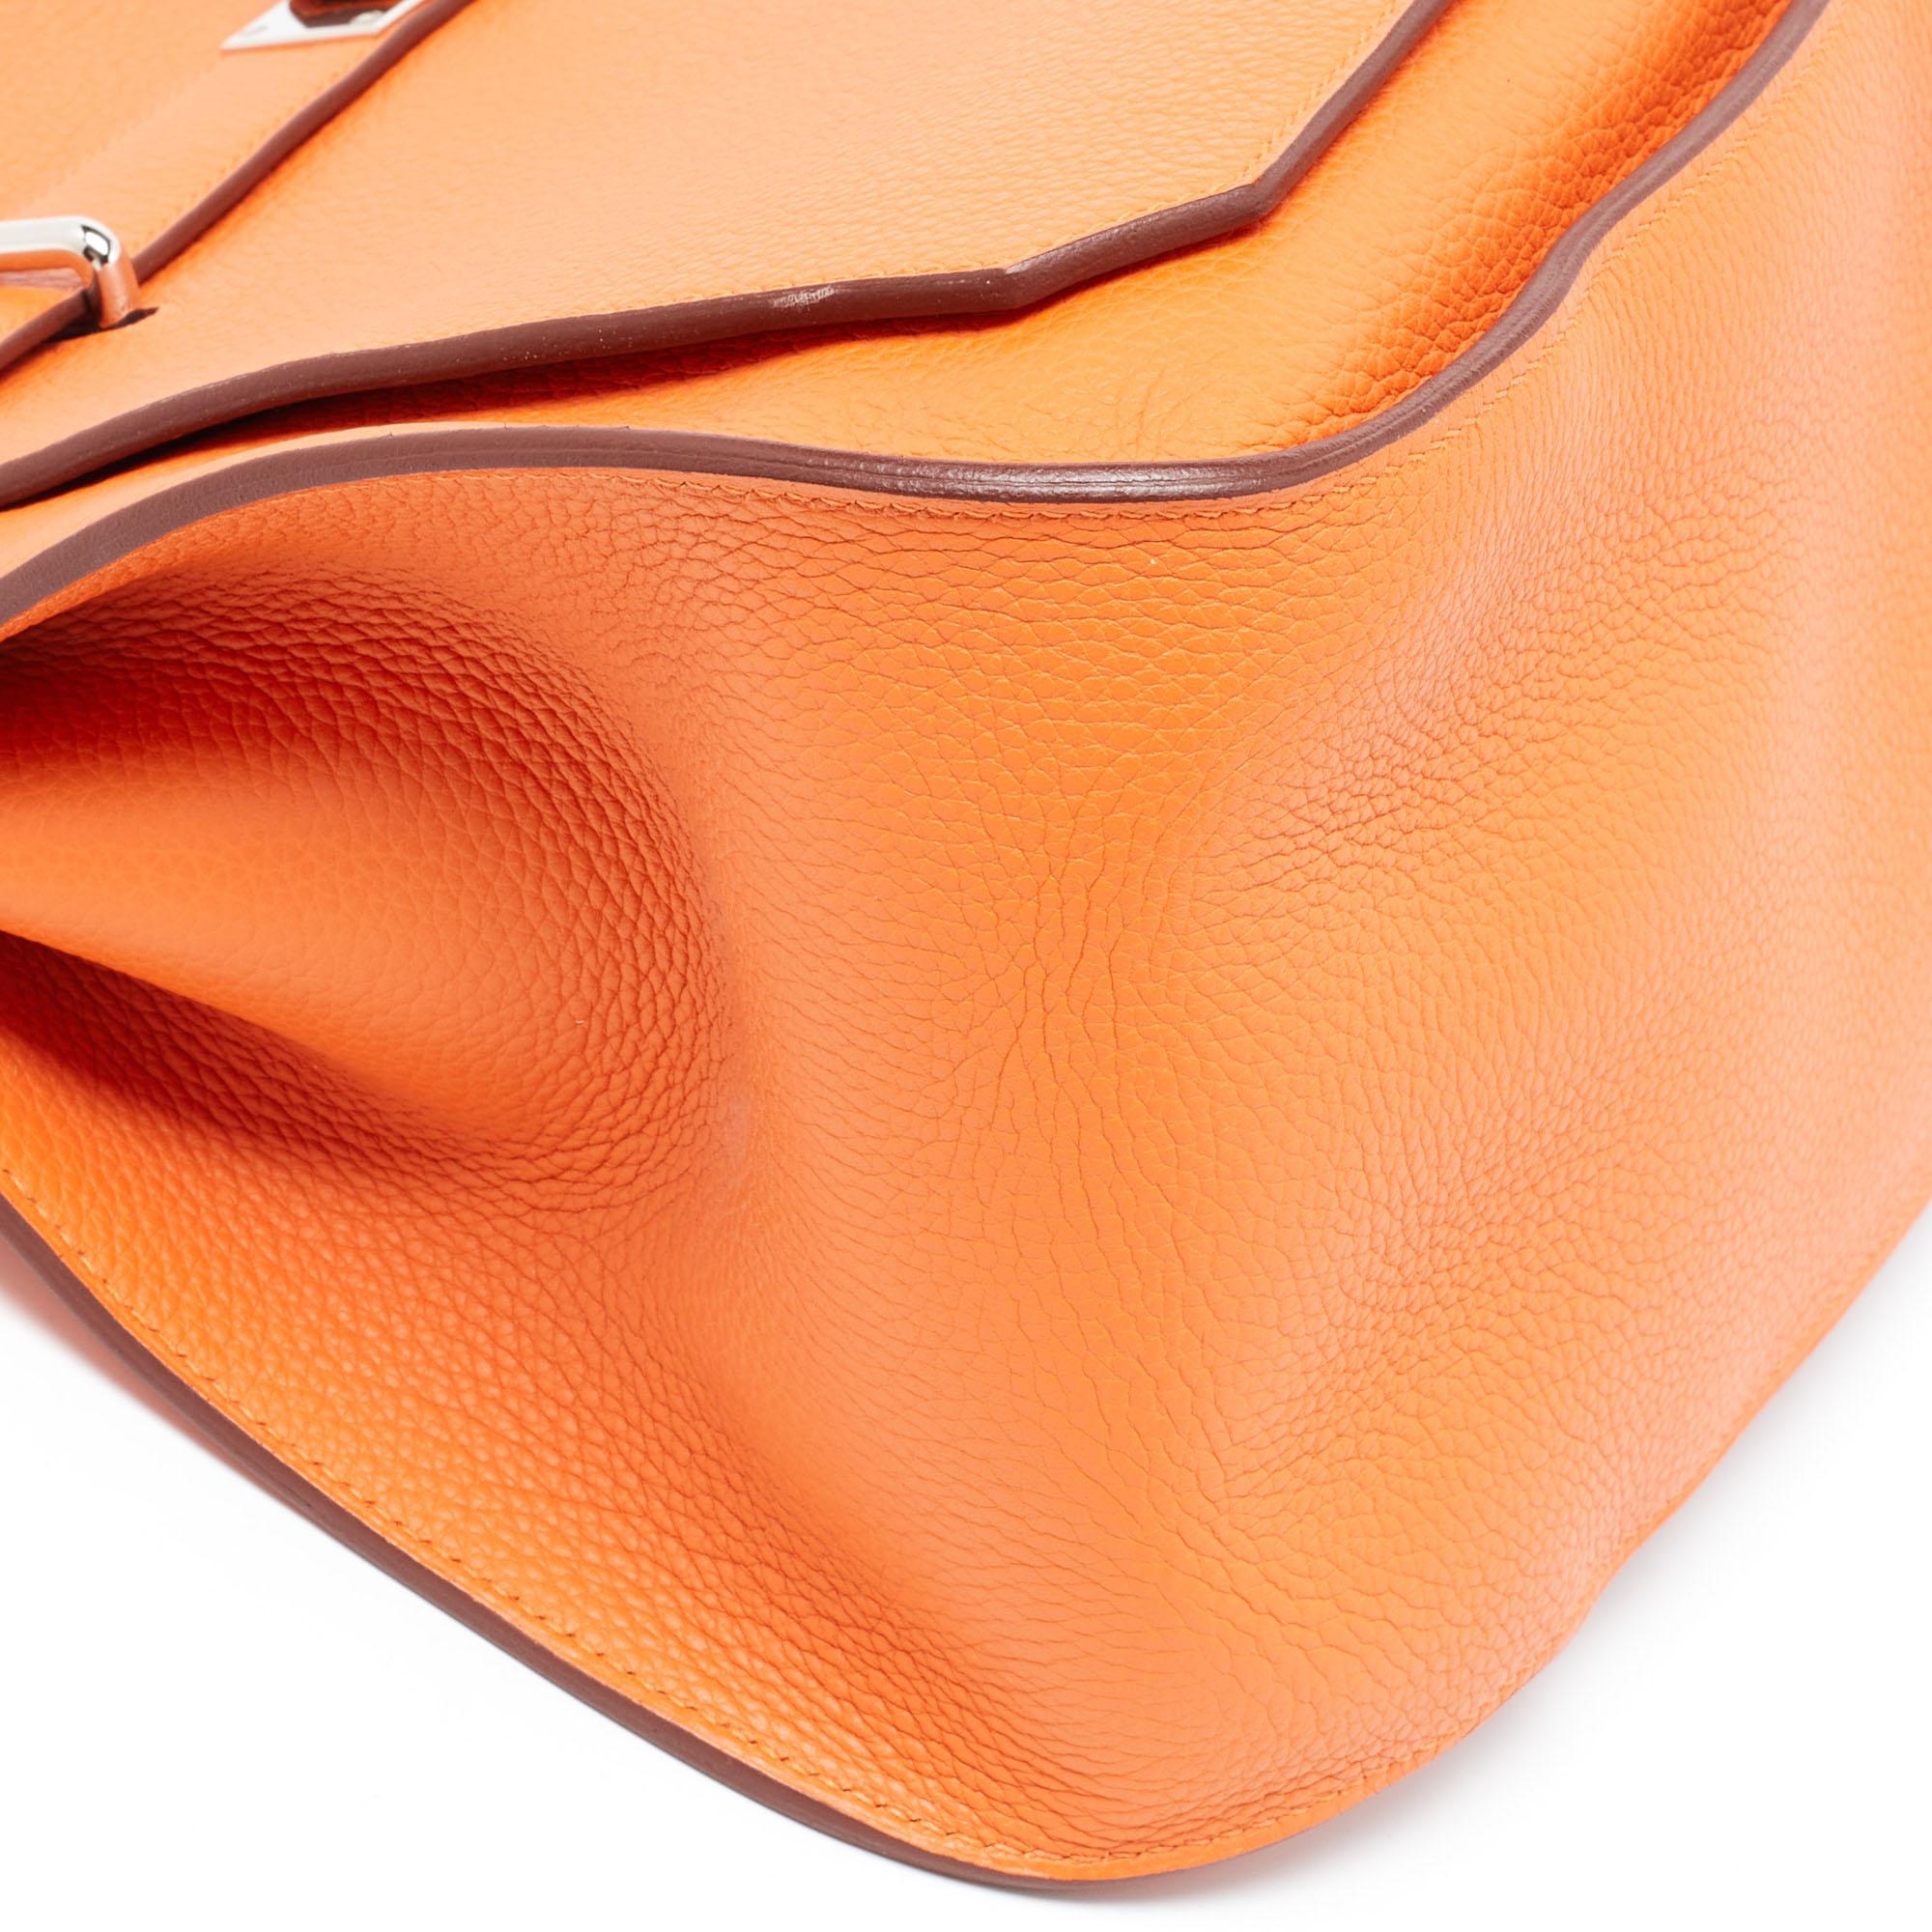 Hermès Orange Togo Leather Palladium Finish Jypsiere 37 Bag For Sale 2